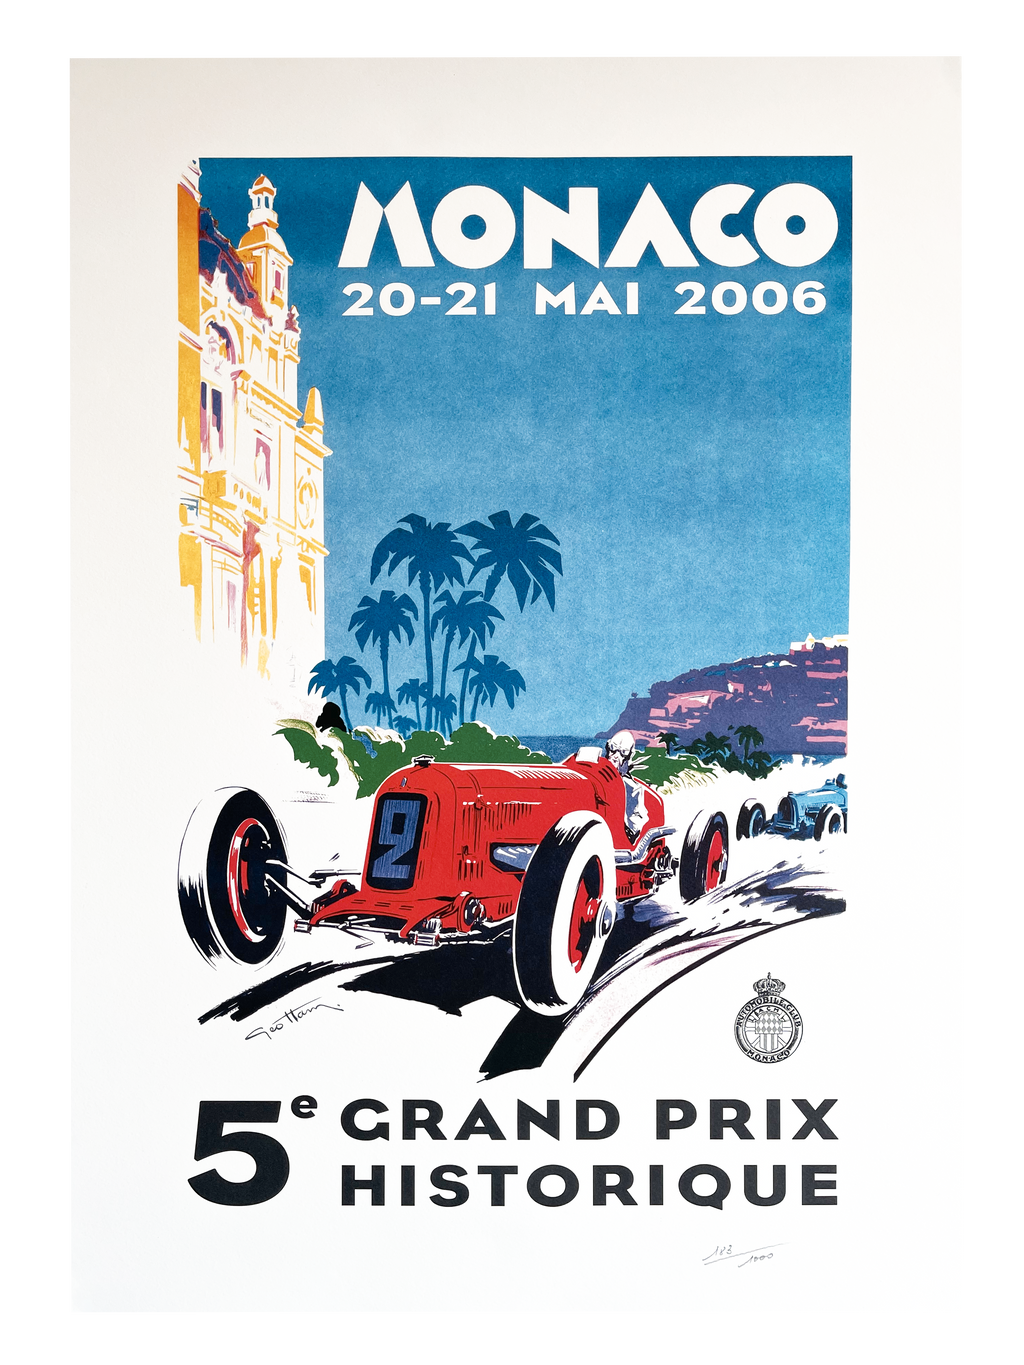 Affiche du Grand Prix de Formule 1 de Monaco 2006 signée par